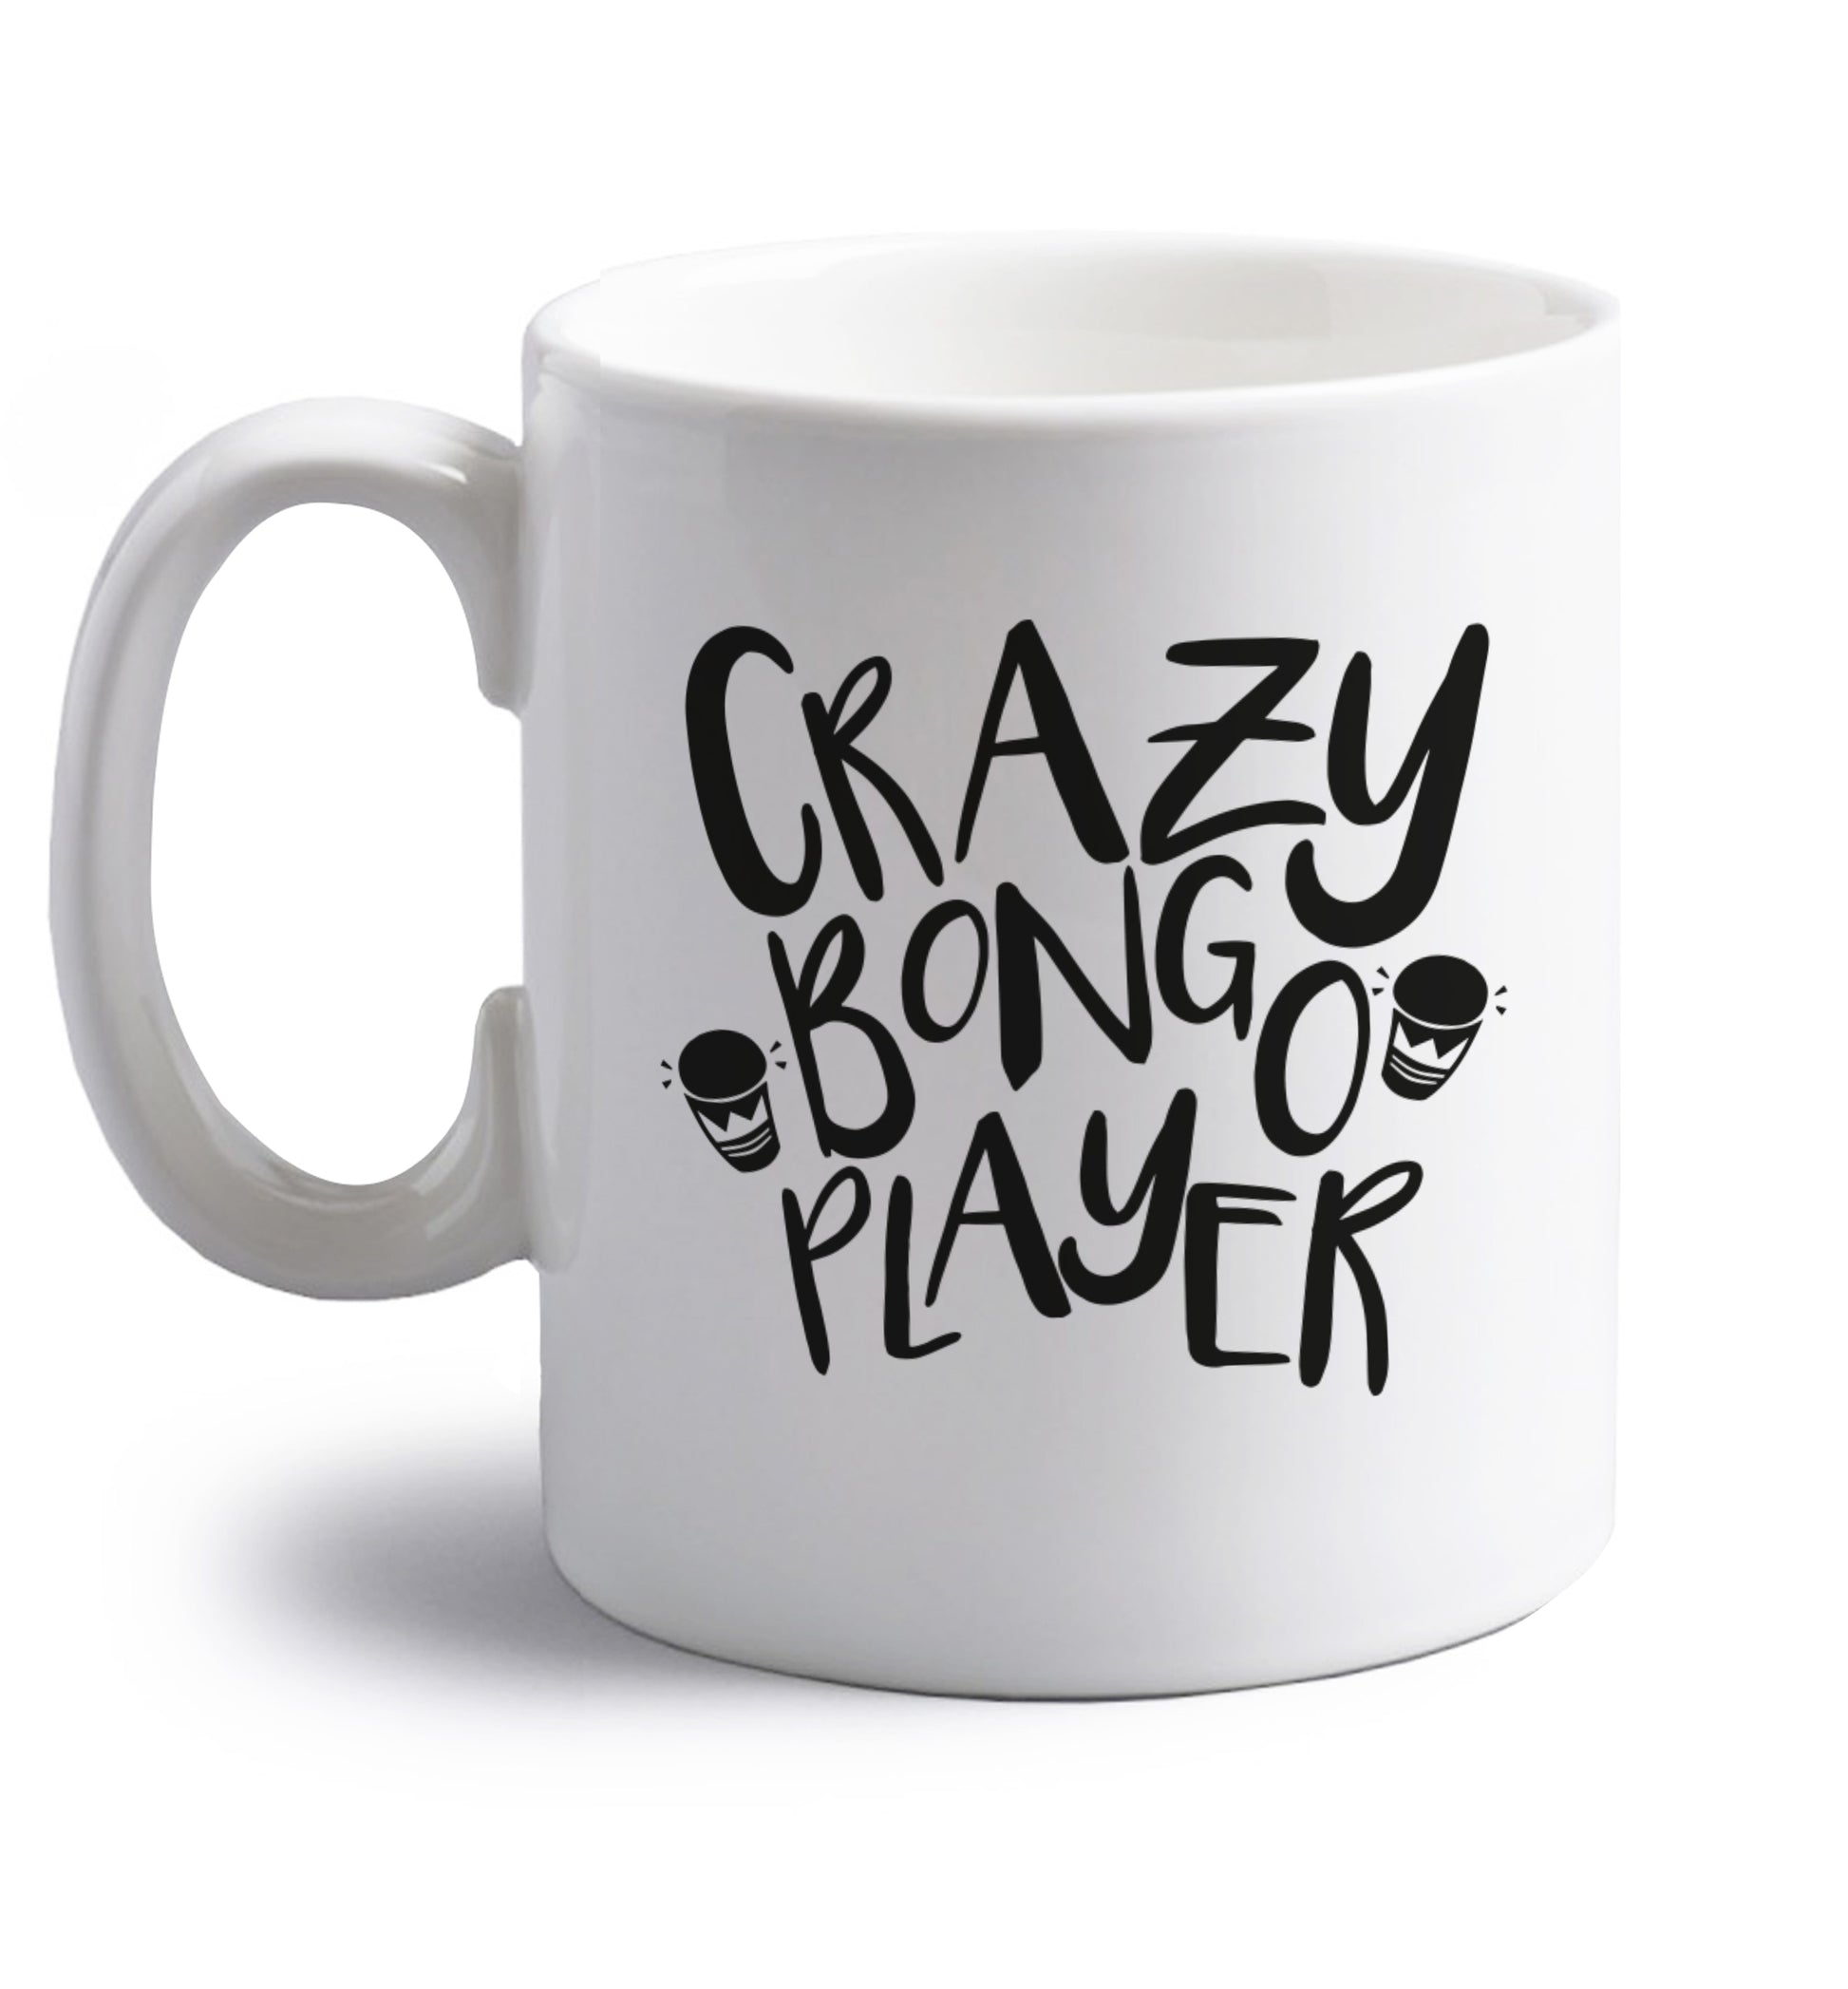 Crazy bongo player right handed white ceramic mug 